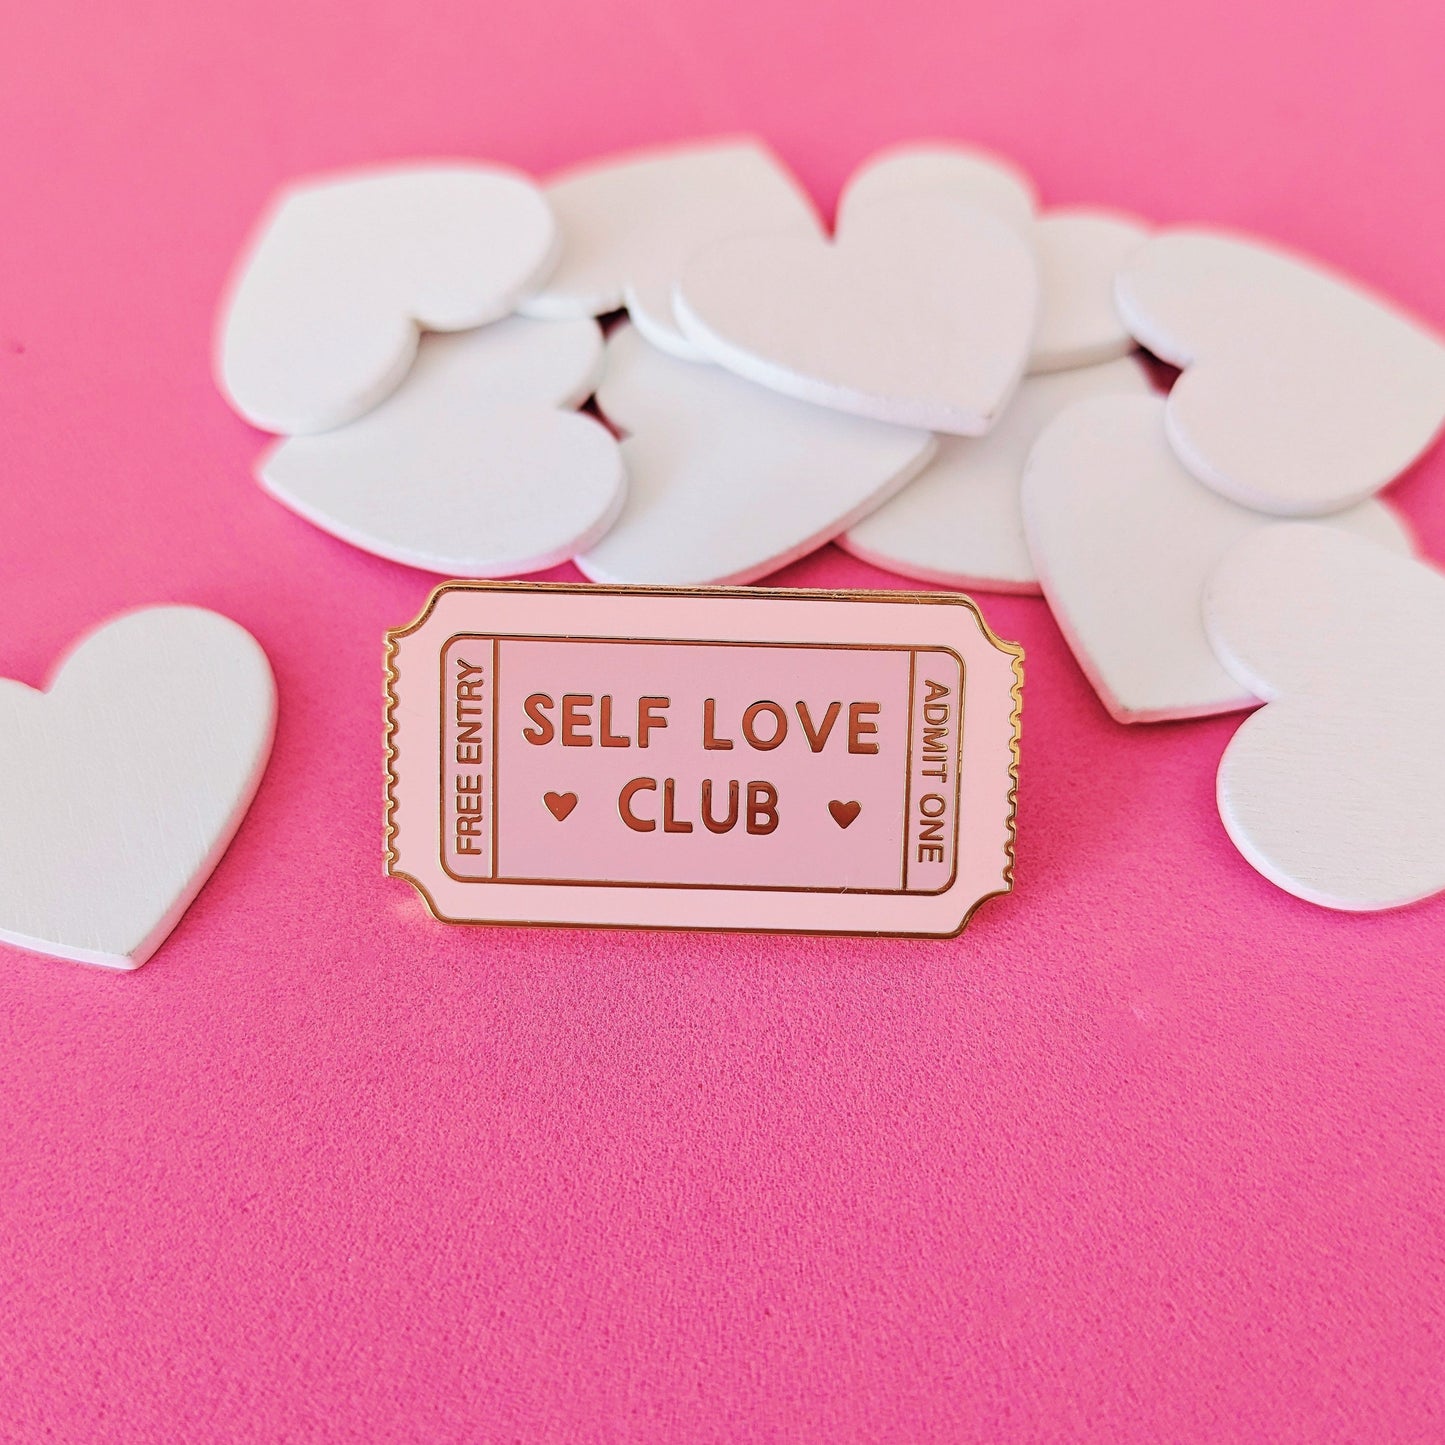 self love club enamel pin badge